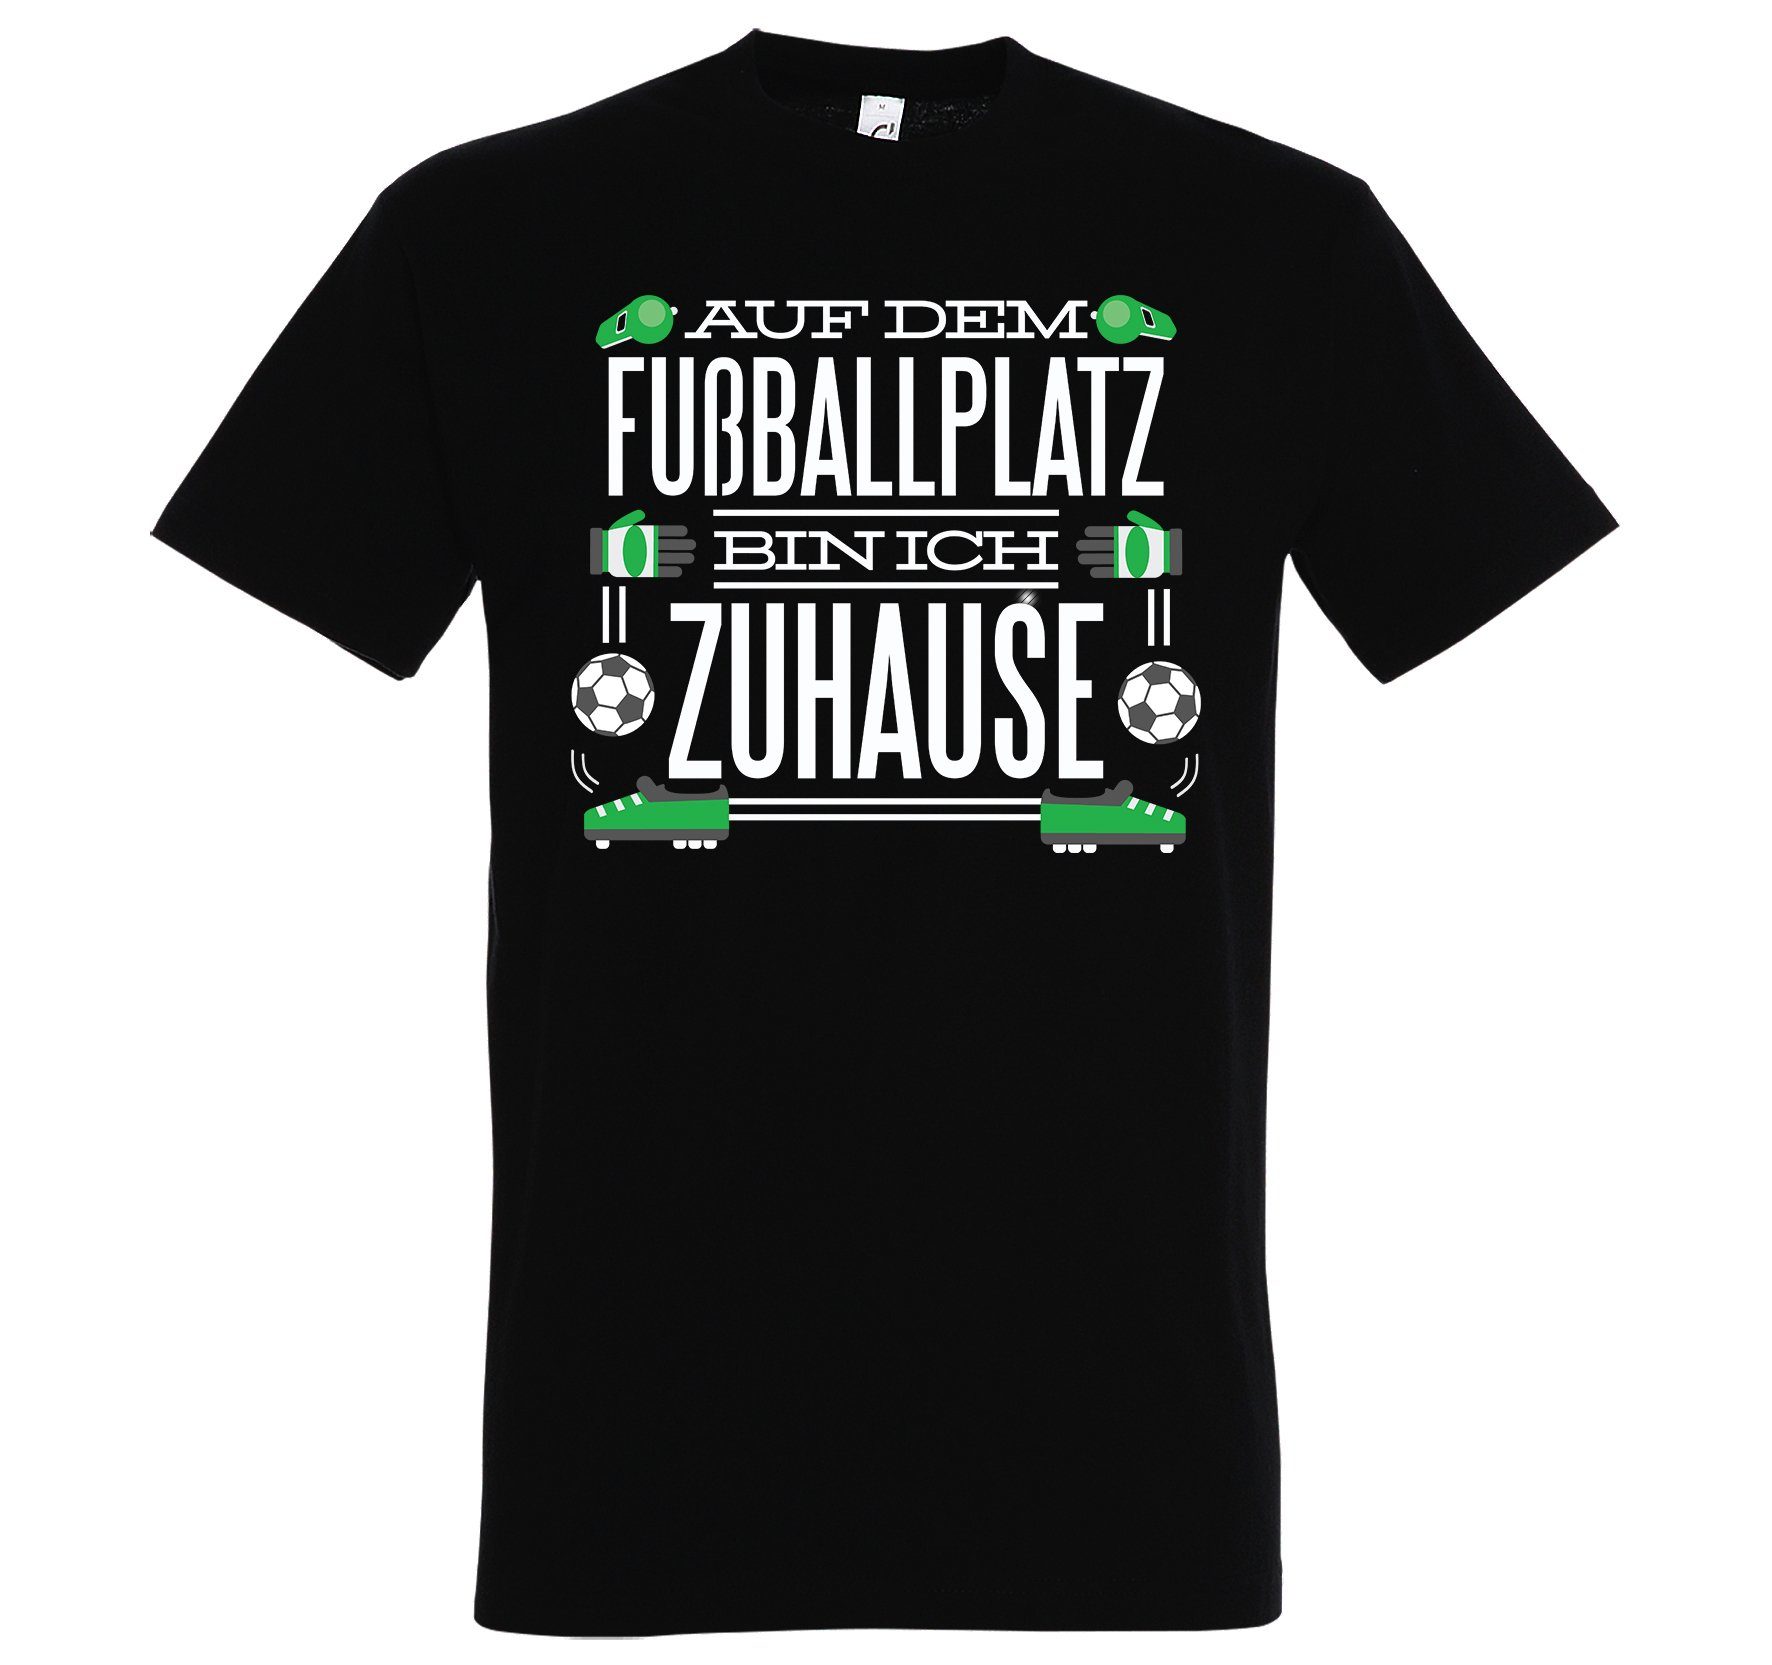 preisbewusst Youth Designz T-Shirt "Auf lustigem Zuhause" ich dem Herren Fußballplatz Spruch Schwarz mit T-Shirt bin